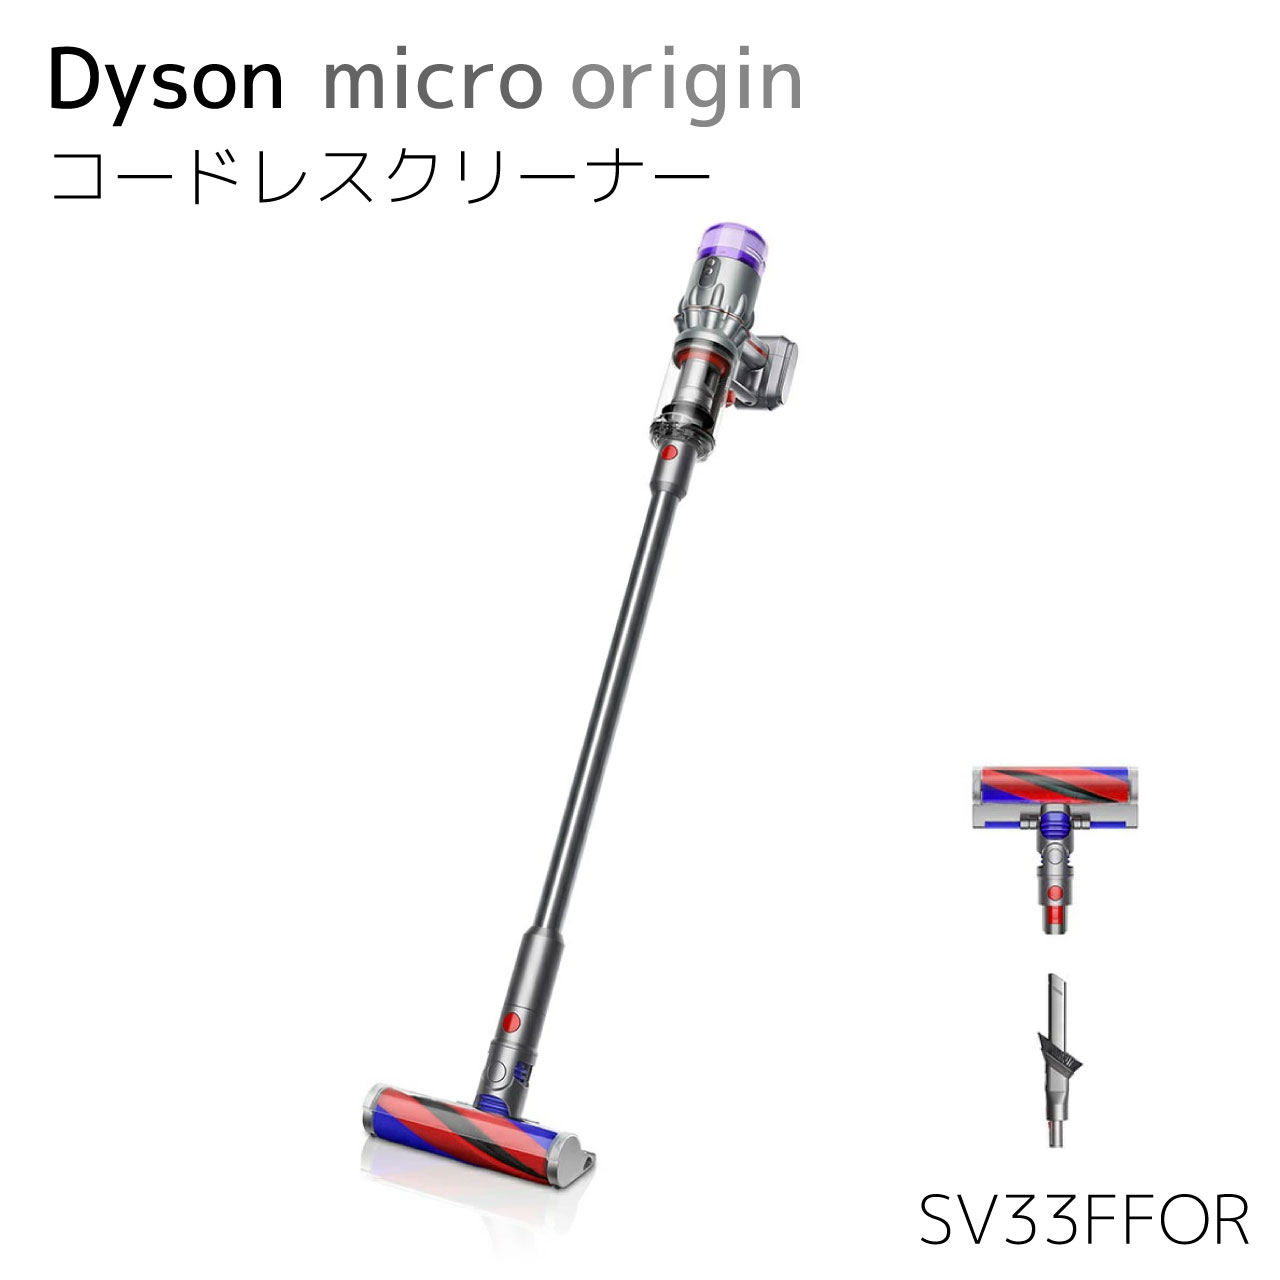 【最軽量モデル】ダイソン Dyson Micro Origin SV33FFOR サイクロン式 コードレス掃除機 dyson 重量1.5kg 2年保証付き 送料無料